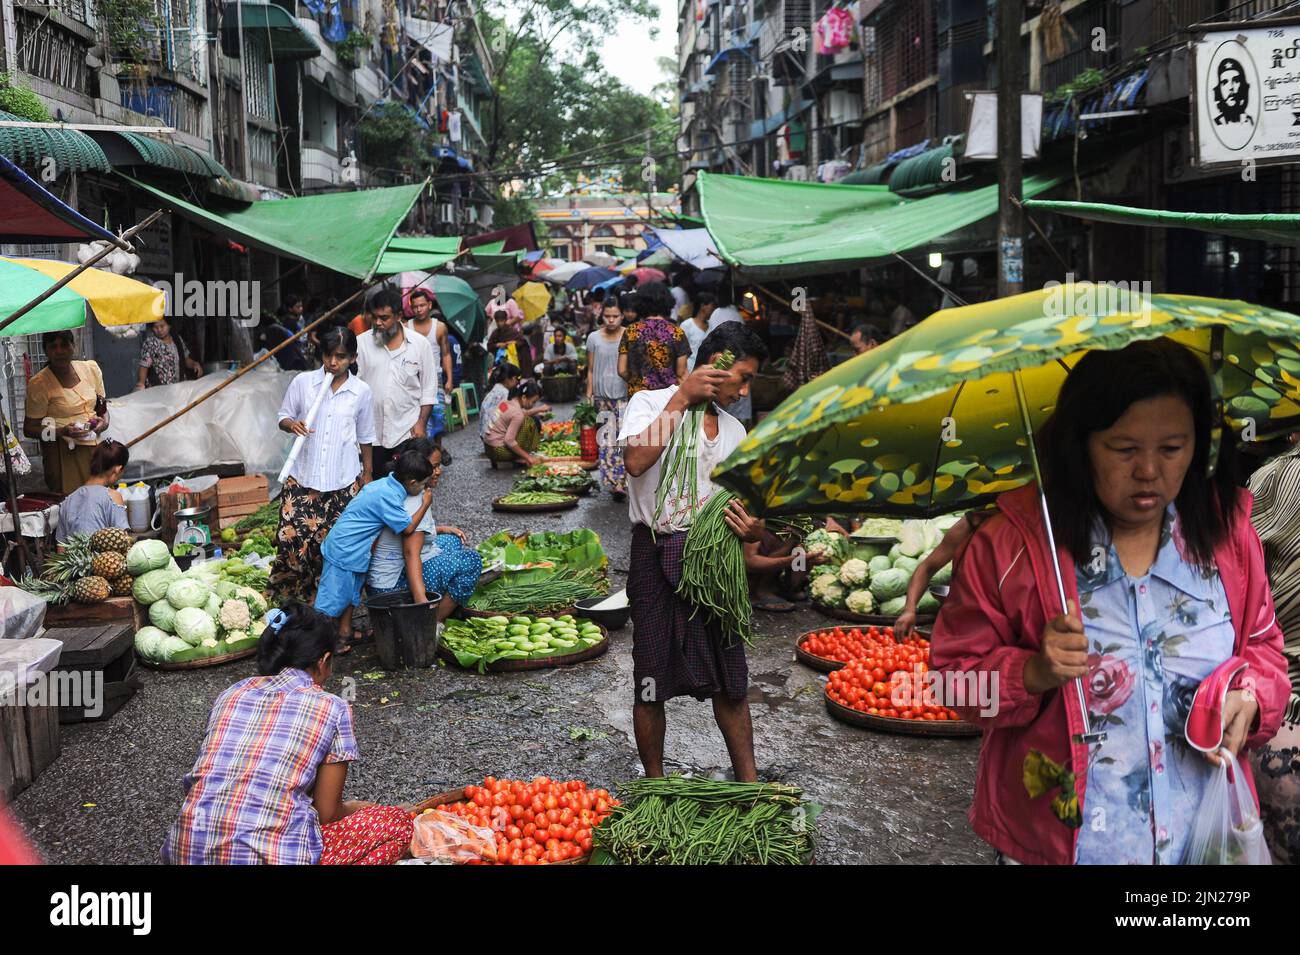 28.07.2013, Yangon, Myanmar, Asien - die Marktszene zeigt Menschen, die während der Regenzeit auf einem Straßenmarkt im Stadtzentrum Gemüse und Lebensmittel kaufen. Stockfoto